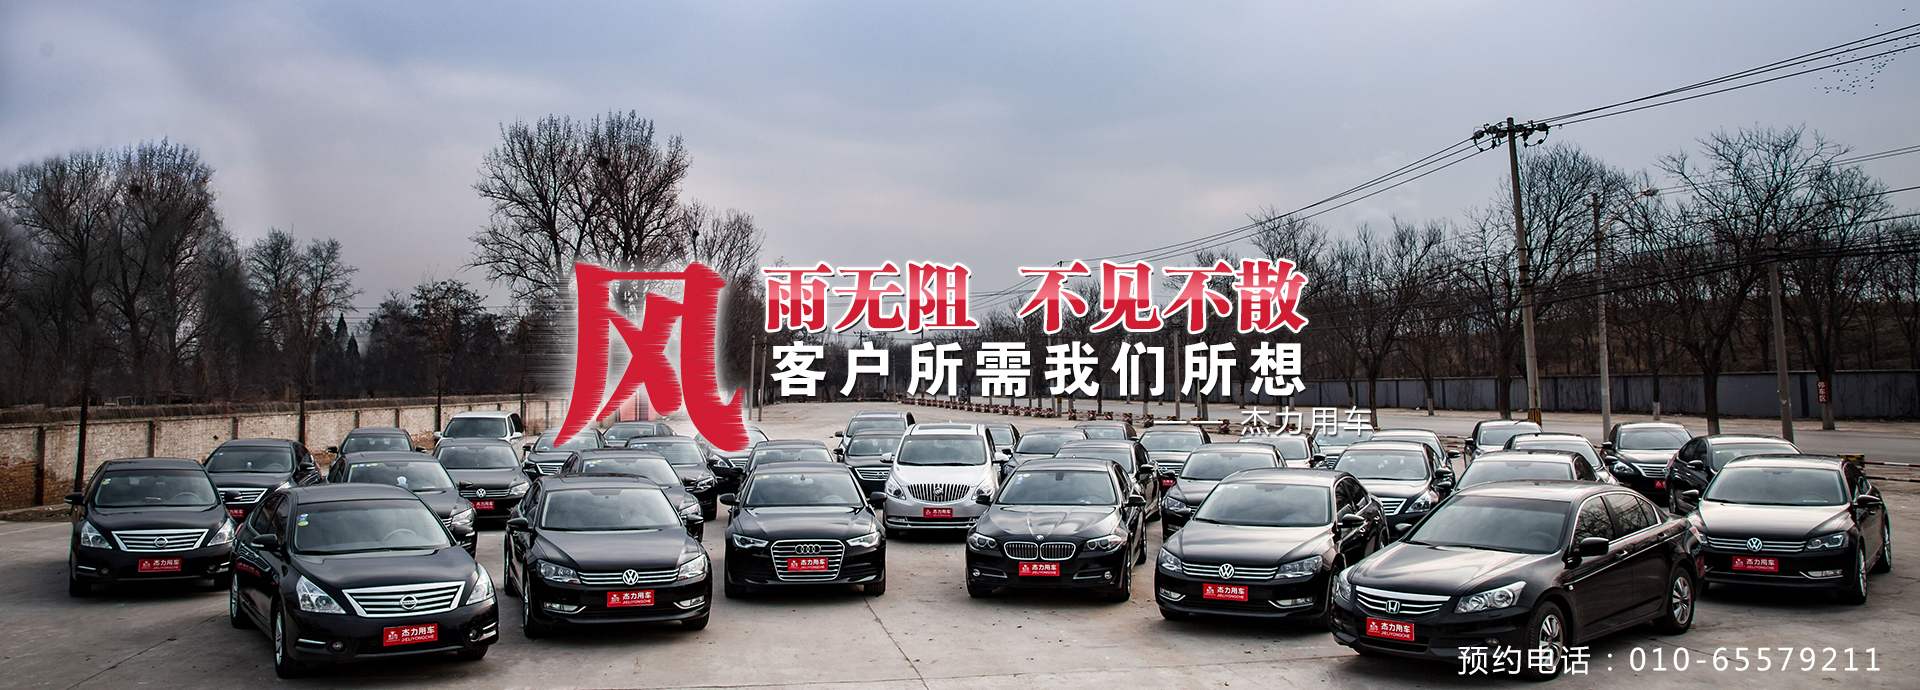 北京杰力汽车服务网